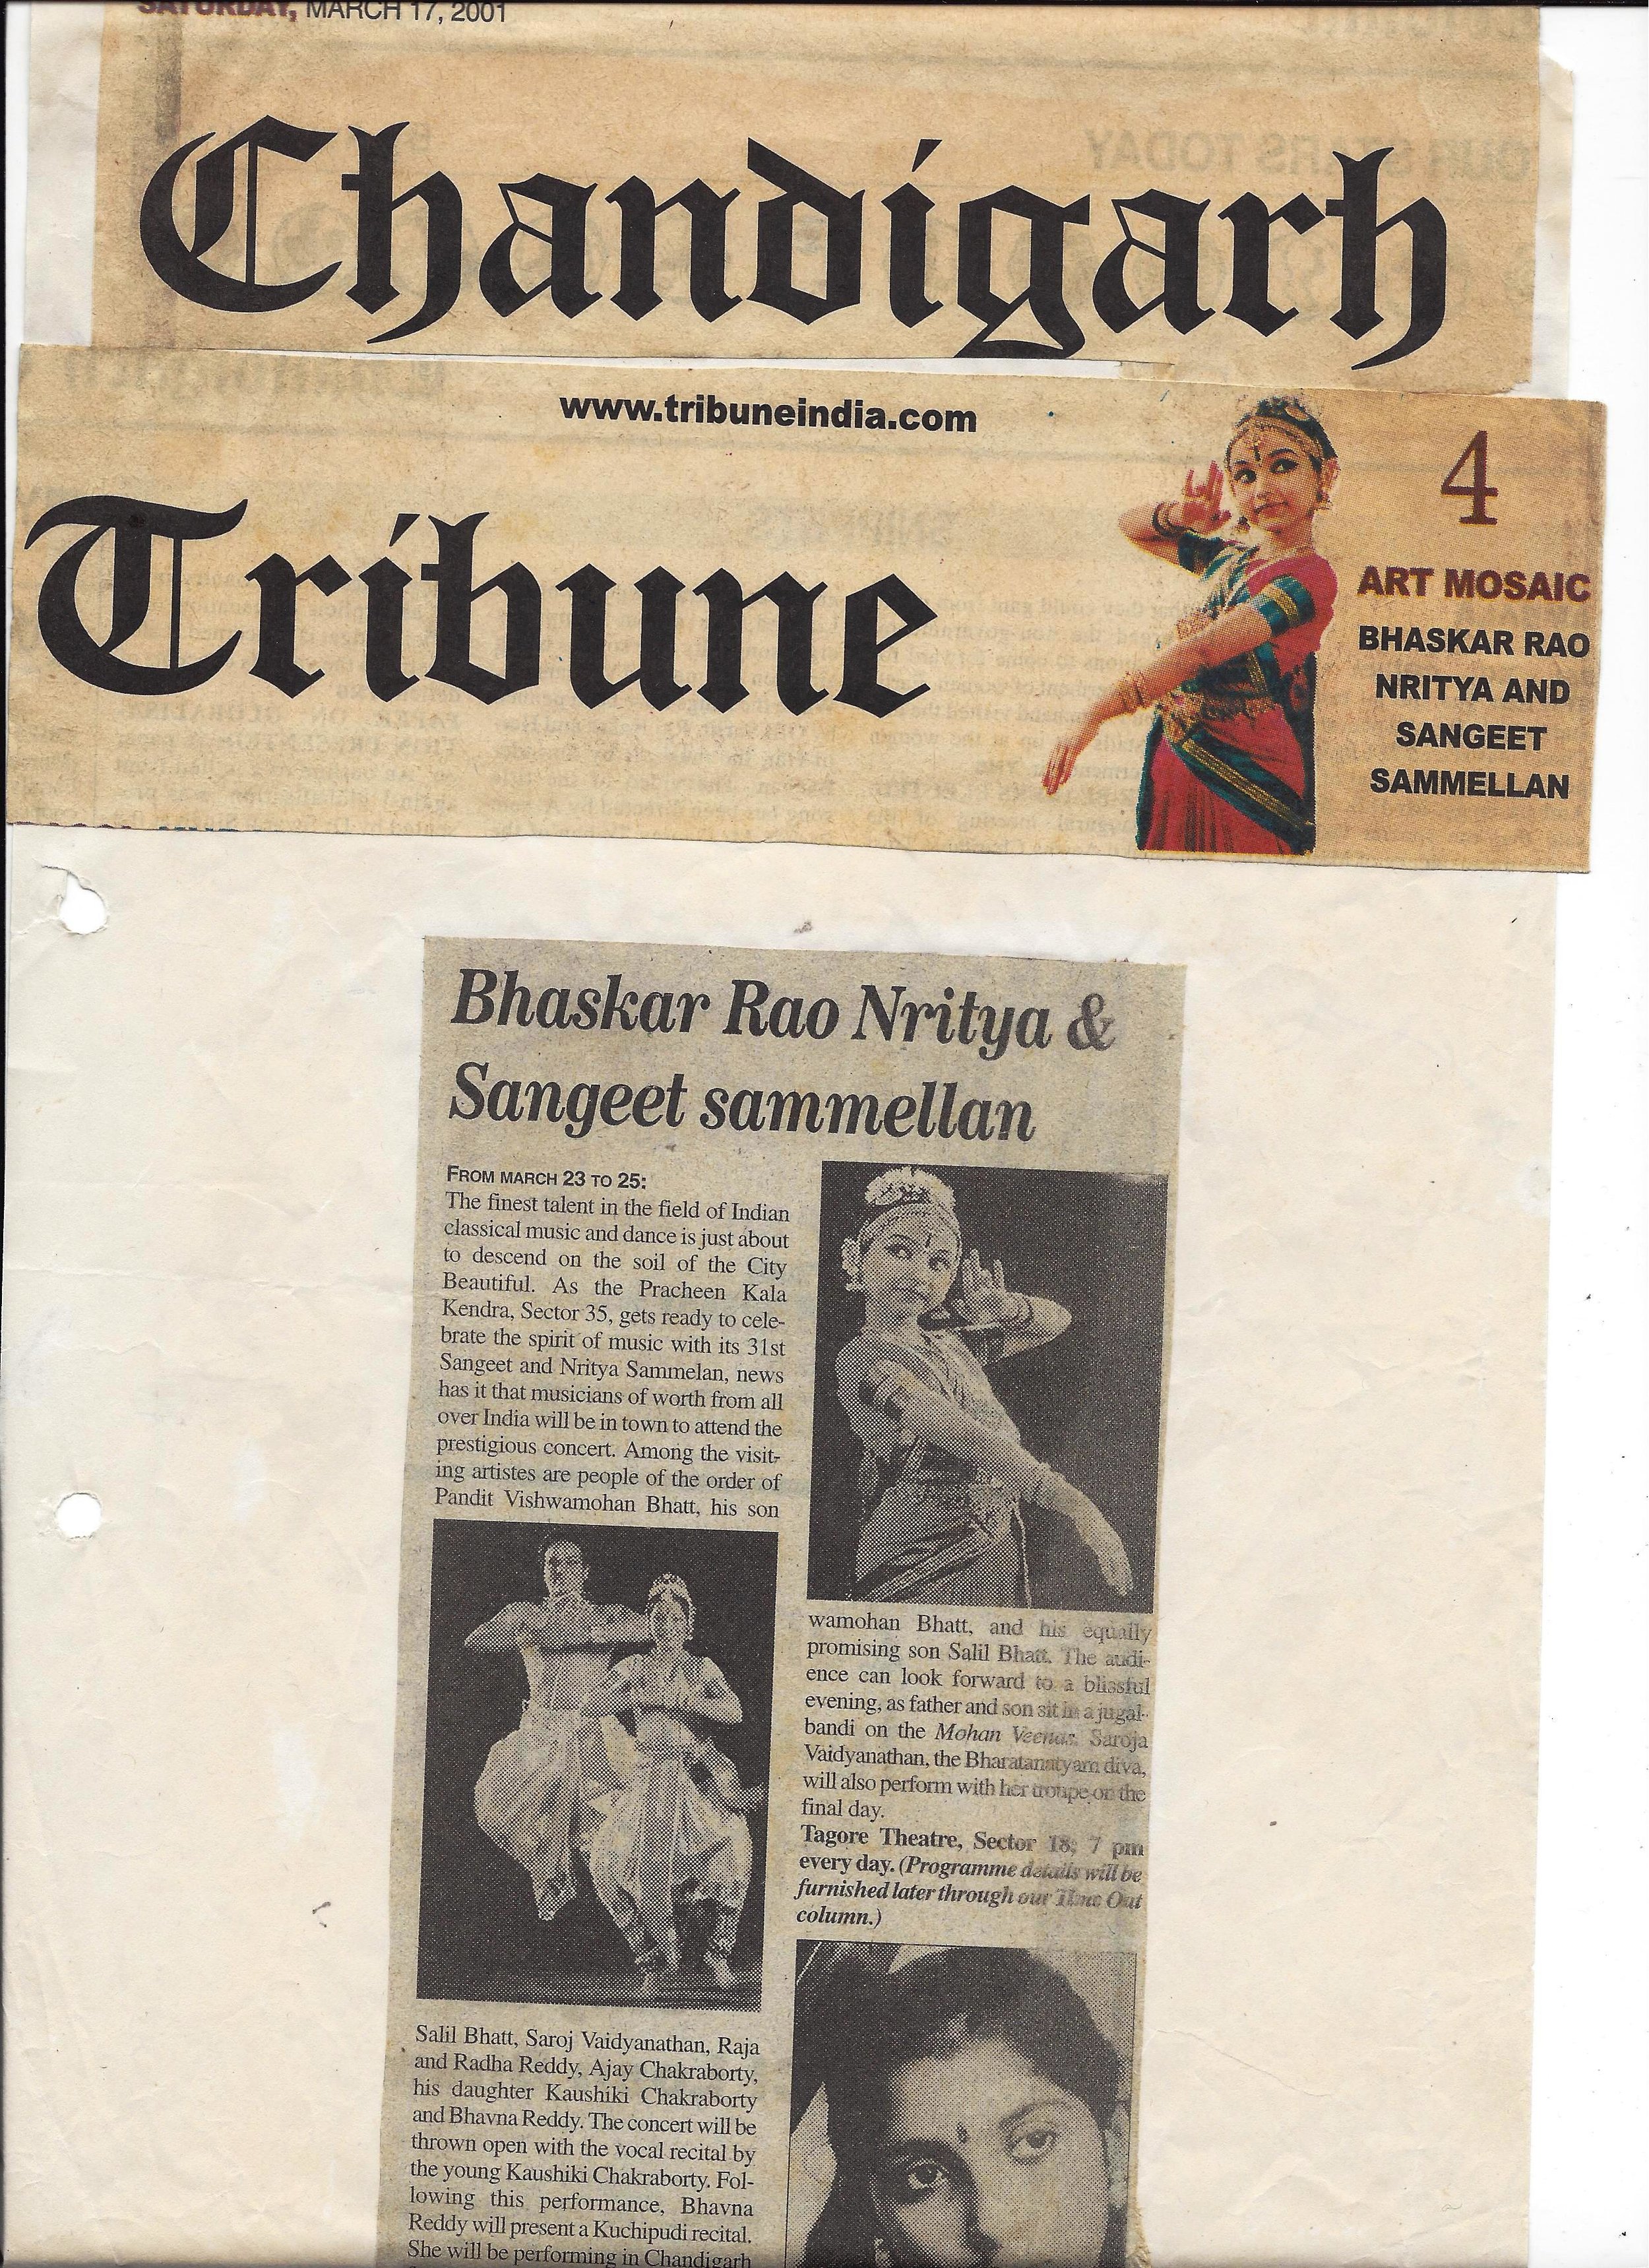 Chandigarh Tribune 2001